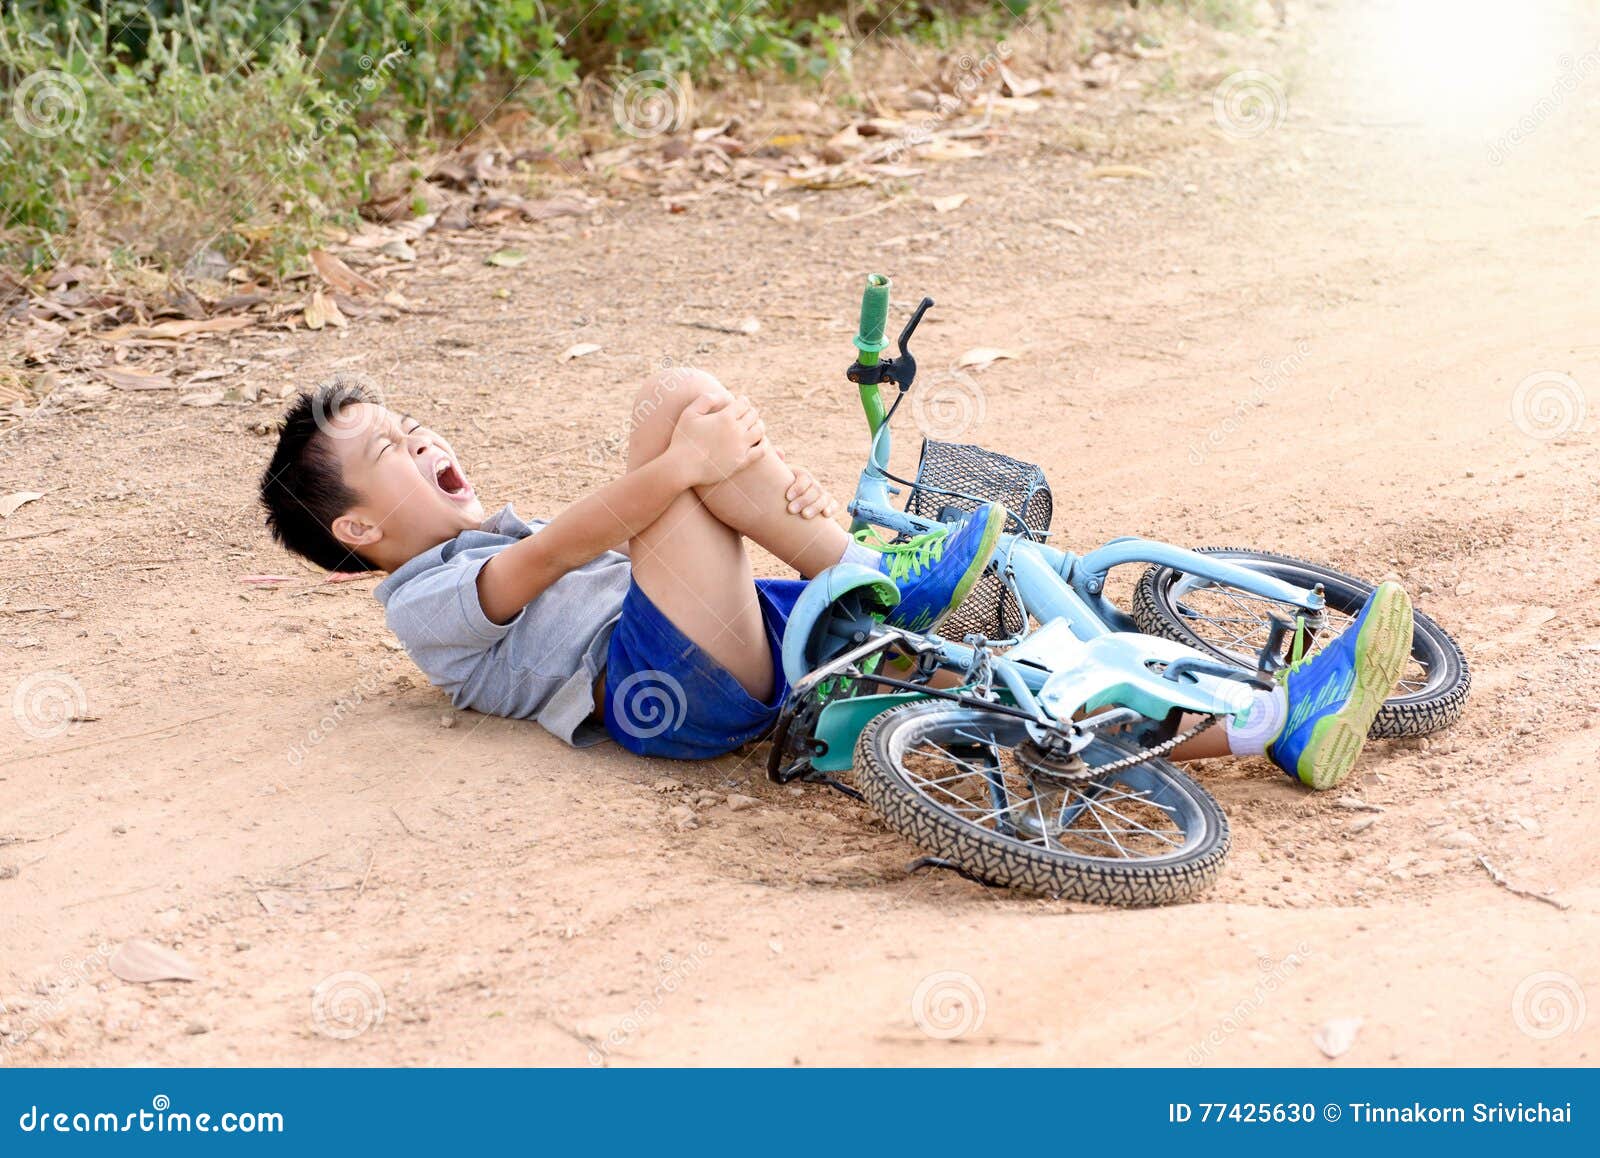 Упал заплакал. Мальчик падает с велосипеда. Мальчик упал с велочэсипеоа. Мальчик упавший с велосипеда.